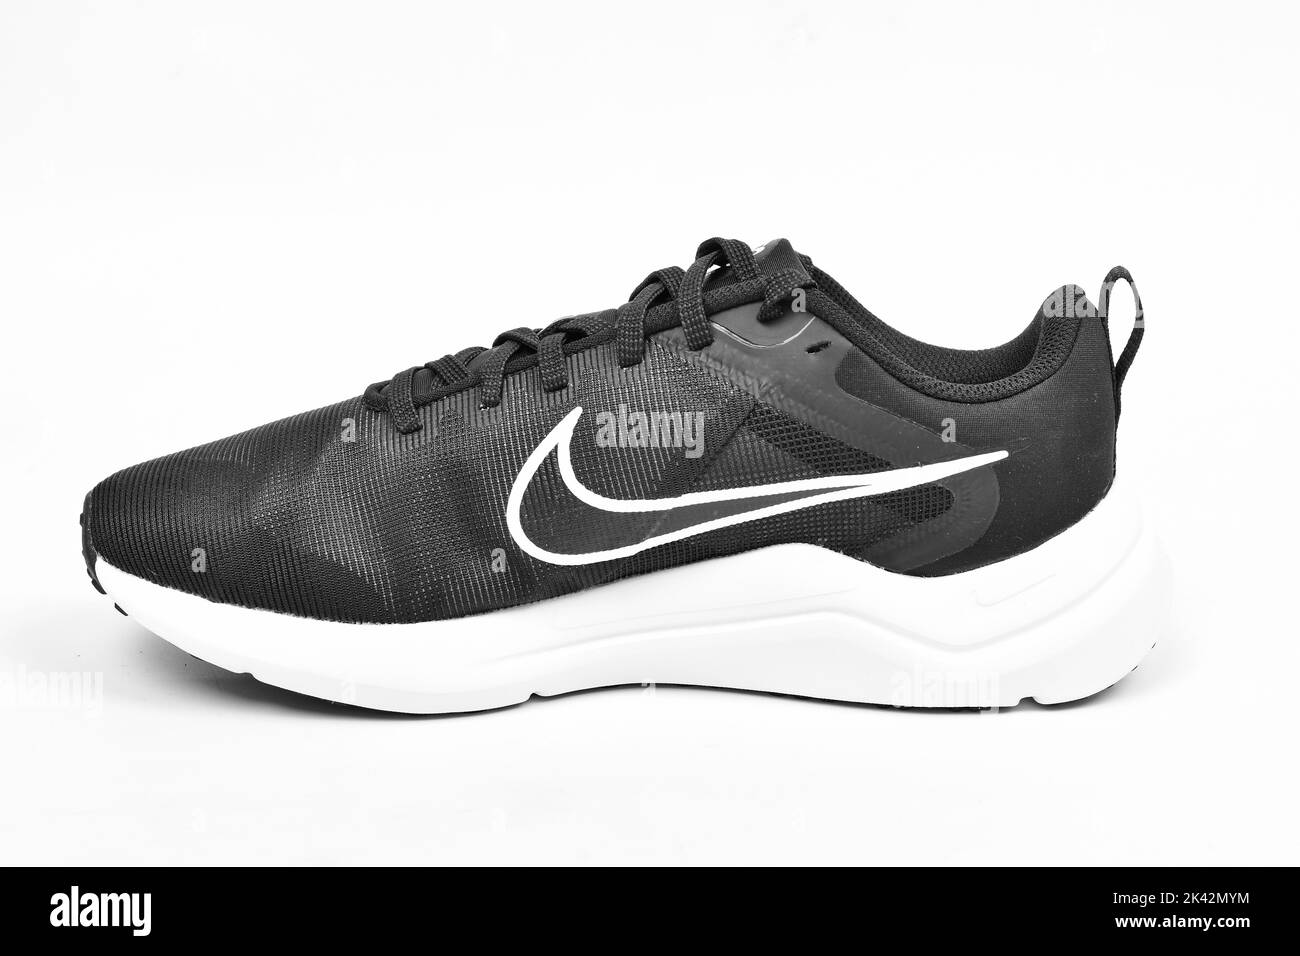 New Delhi, India - 29 September 2022 : Nike running shoe on white background Stock Photo